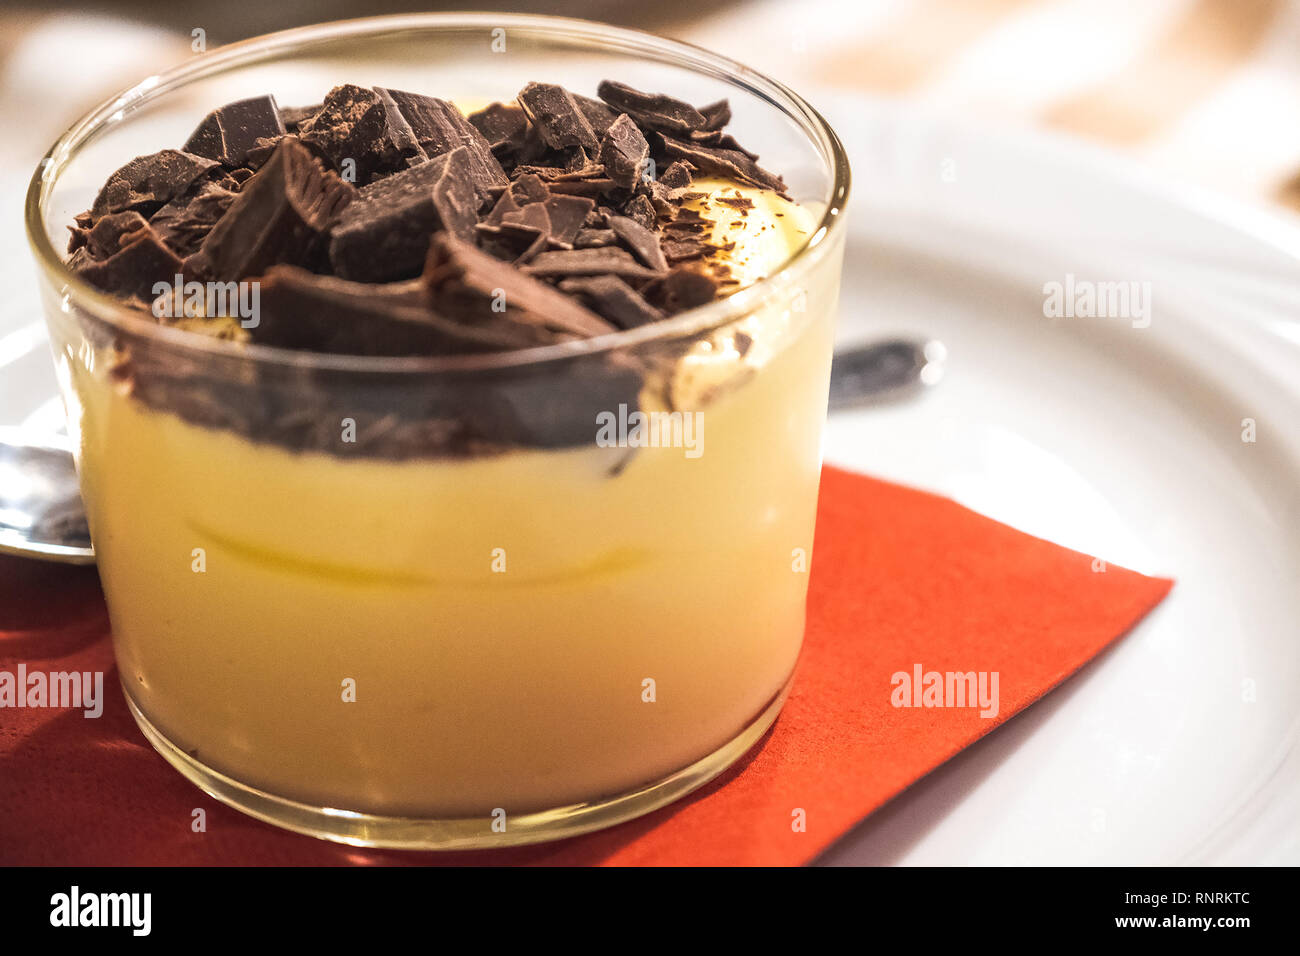 Porzione di mascarpone con scaglie di cioccolato o coppa di mascarpone con scaglie di cioccolato italiano dessert tradizionale Foto Stock